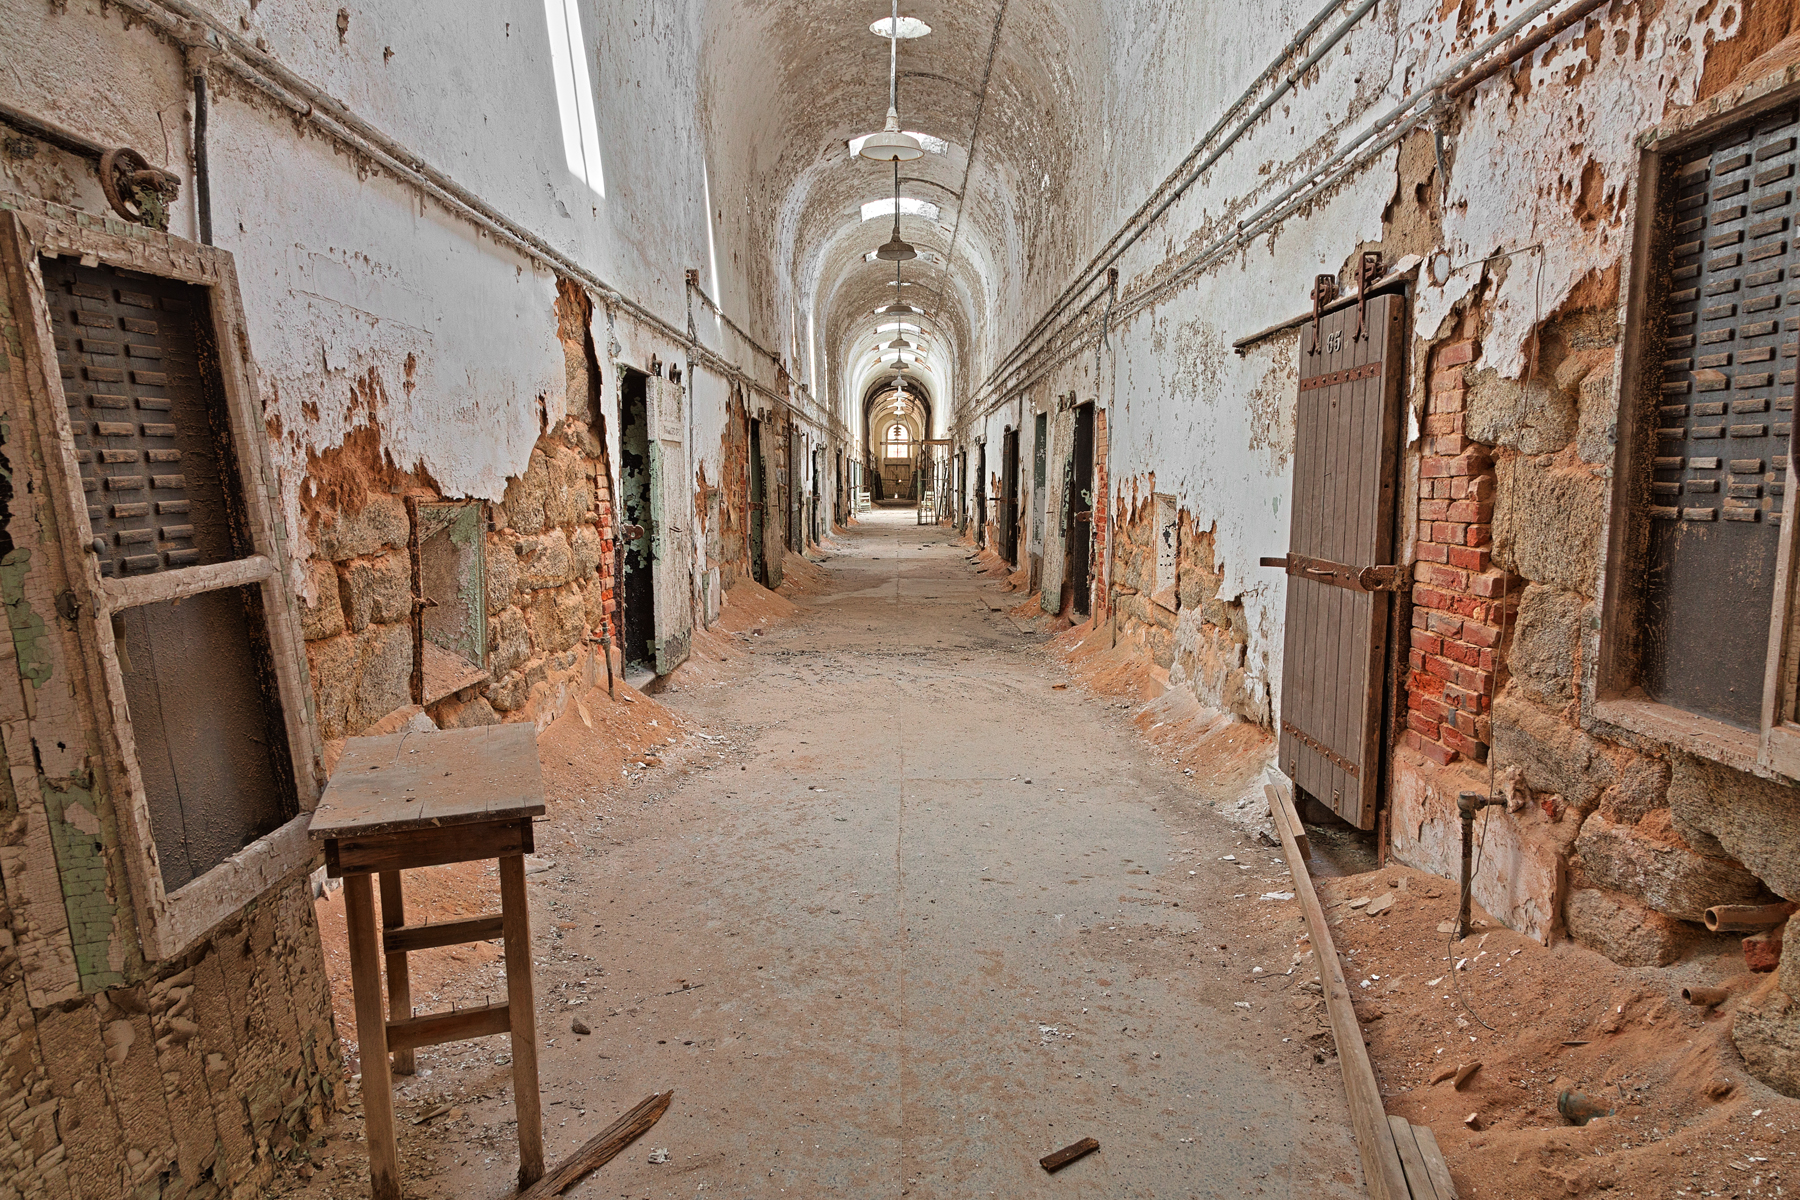 Prison corridor - hdr photo